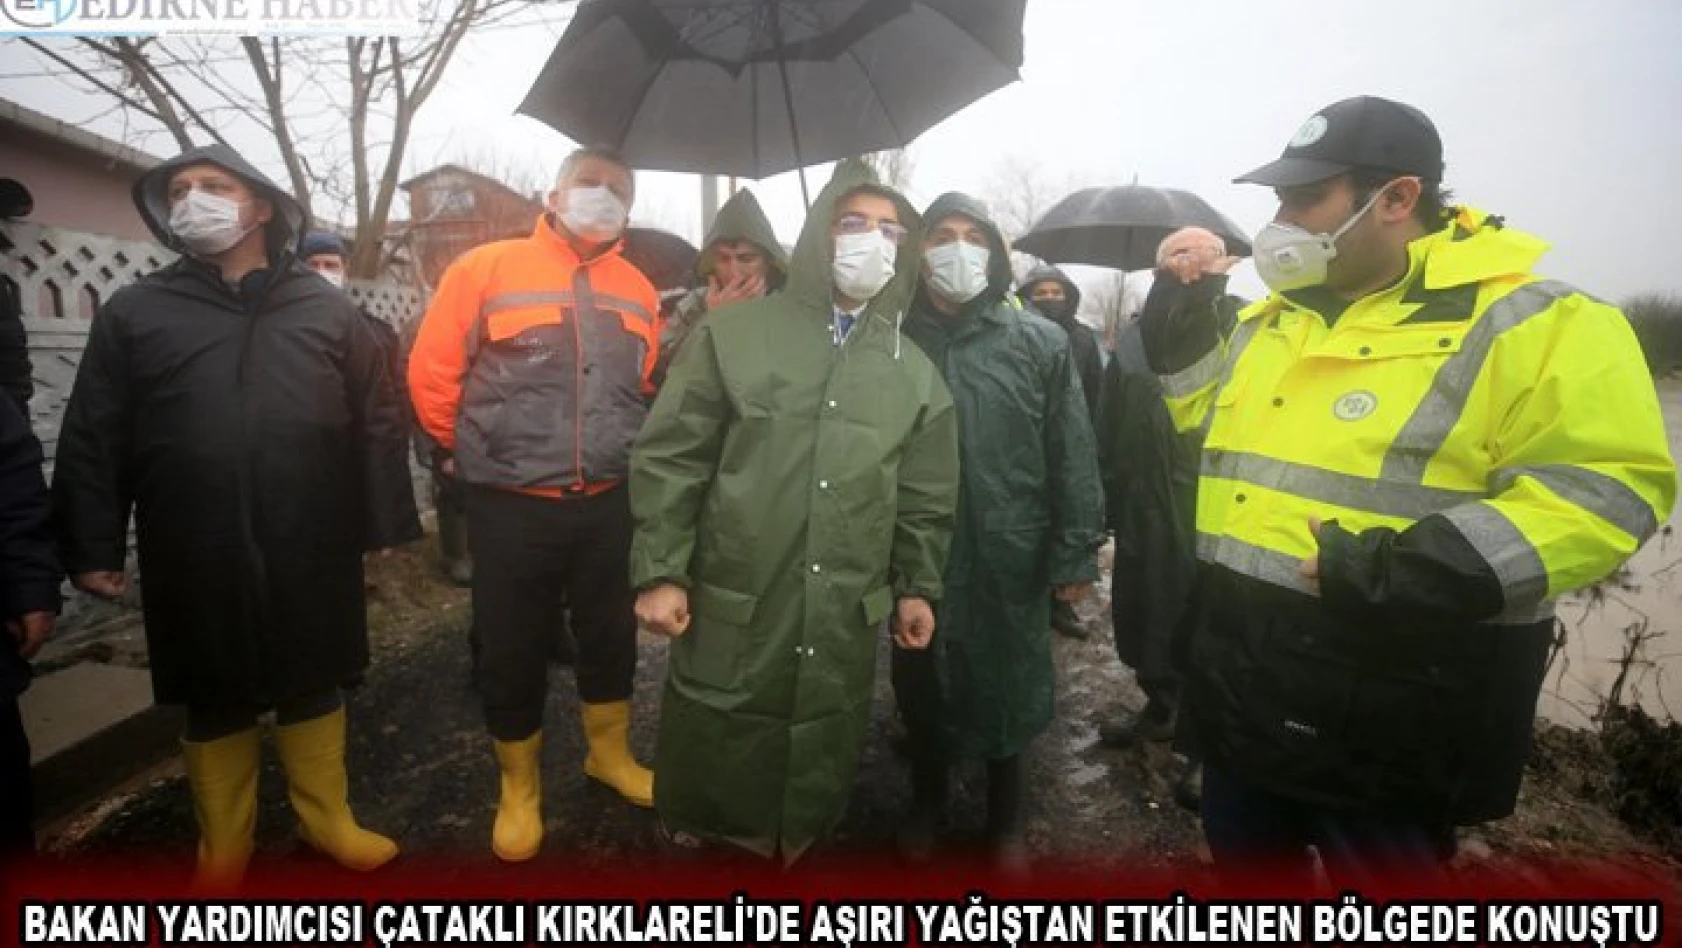 Bakan Yardımcısı Çataklı Kırklareli'de aşırı yağıştan etkilenen bölgede konuştu